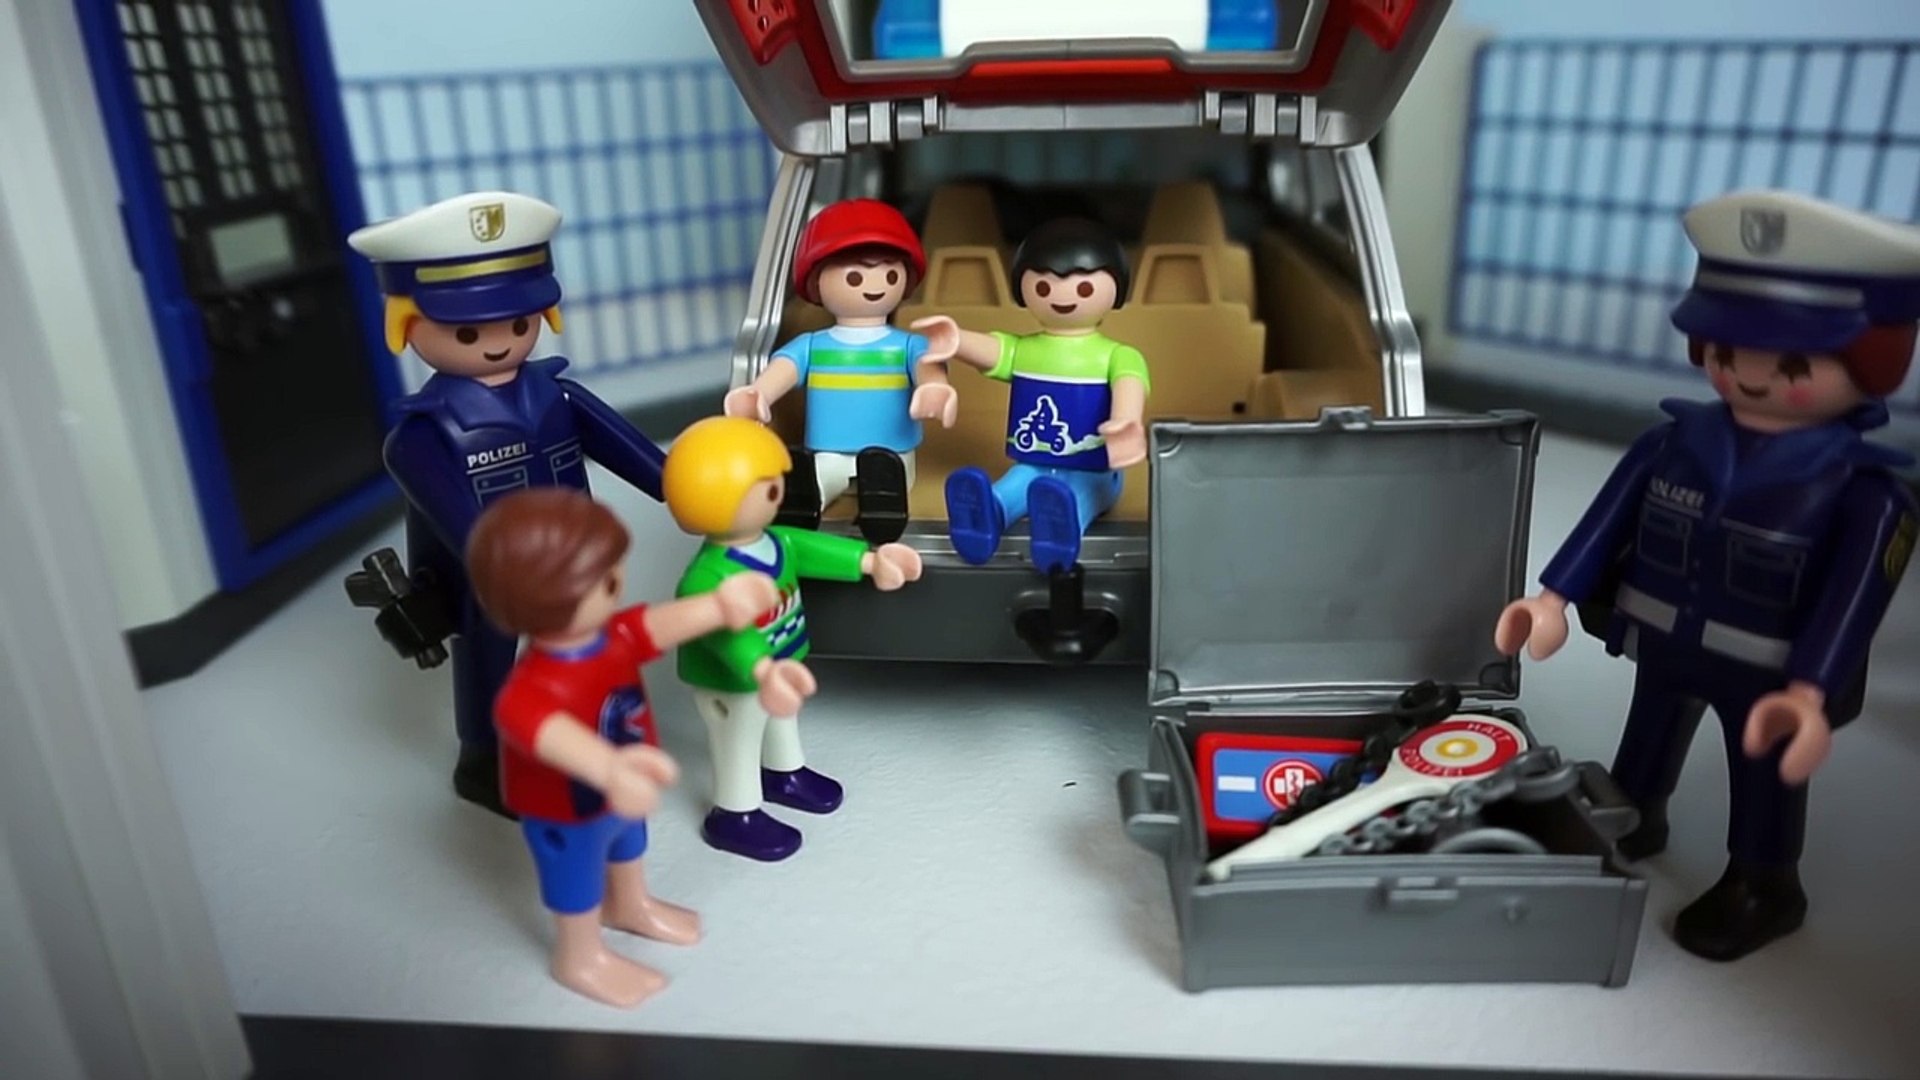 BESUCH AUF DER POLIZEISTATION - Polizei EINSATZ mit Sabine & Michael Playmobil  Film deutsch - Dailymotion Video